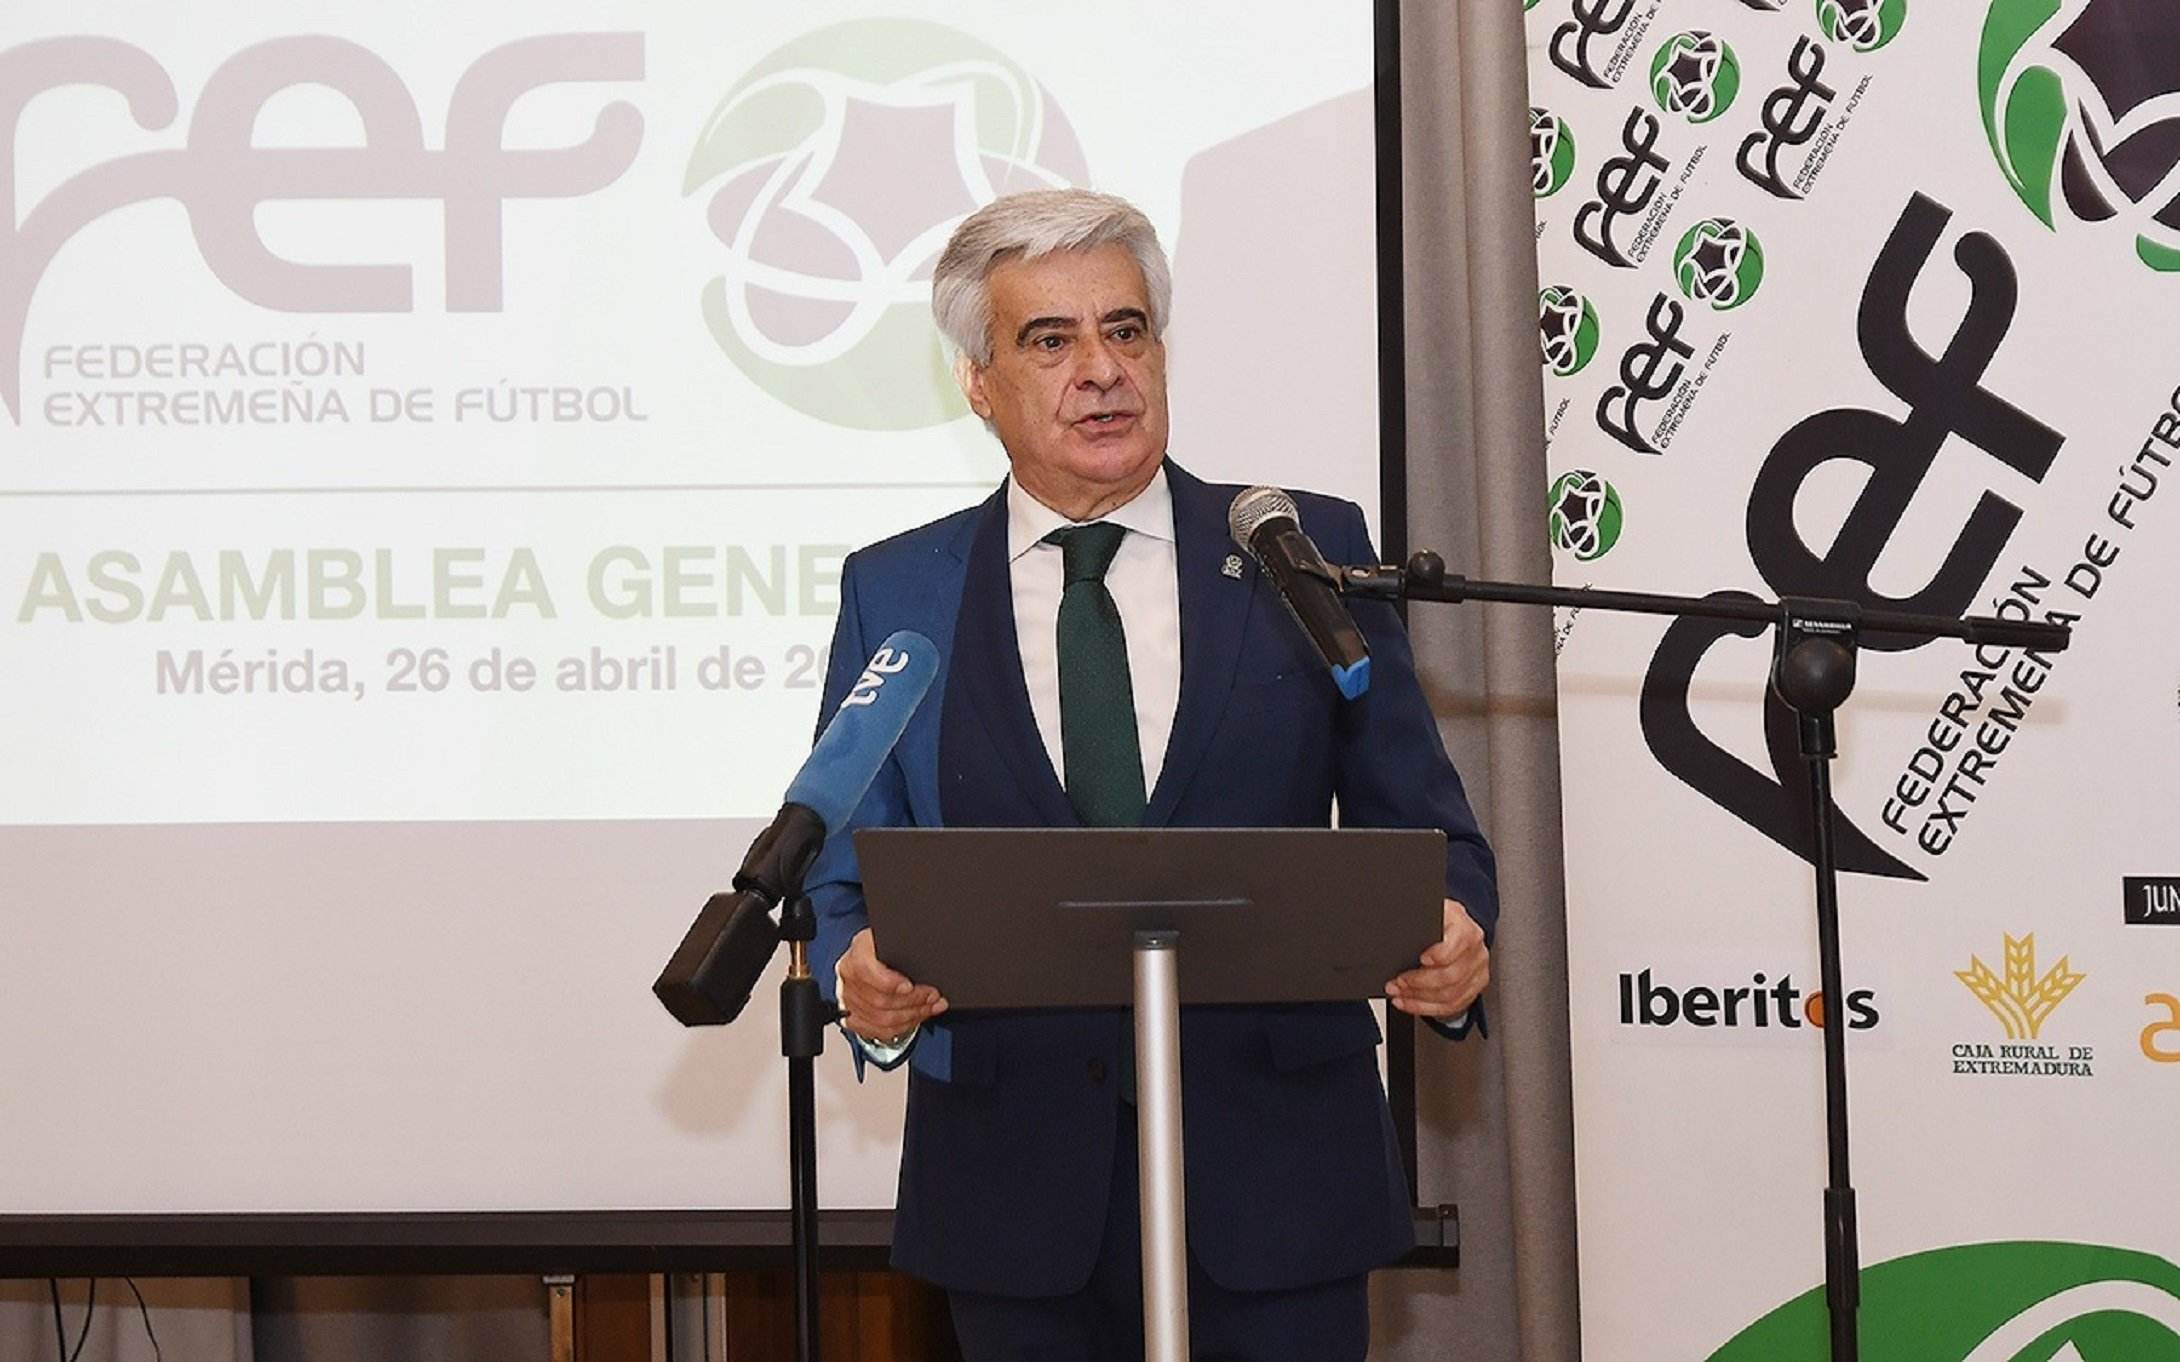 Pedro Rocha, la mà dreta de Rubiales i el principal candidat a substituir-lo com a president de la RFEF